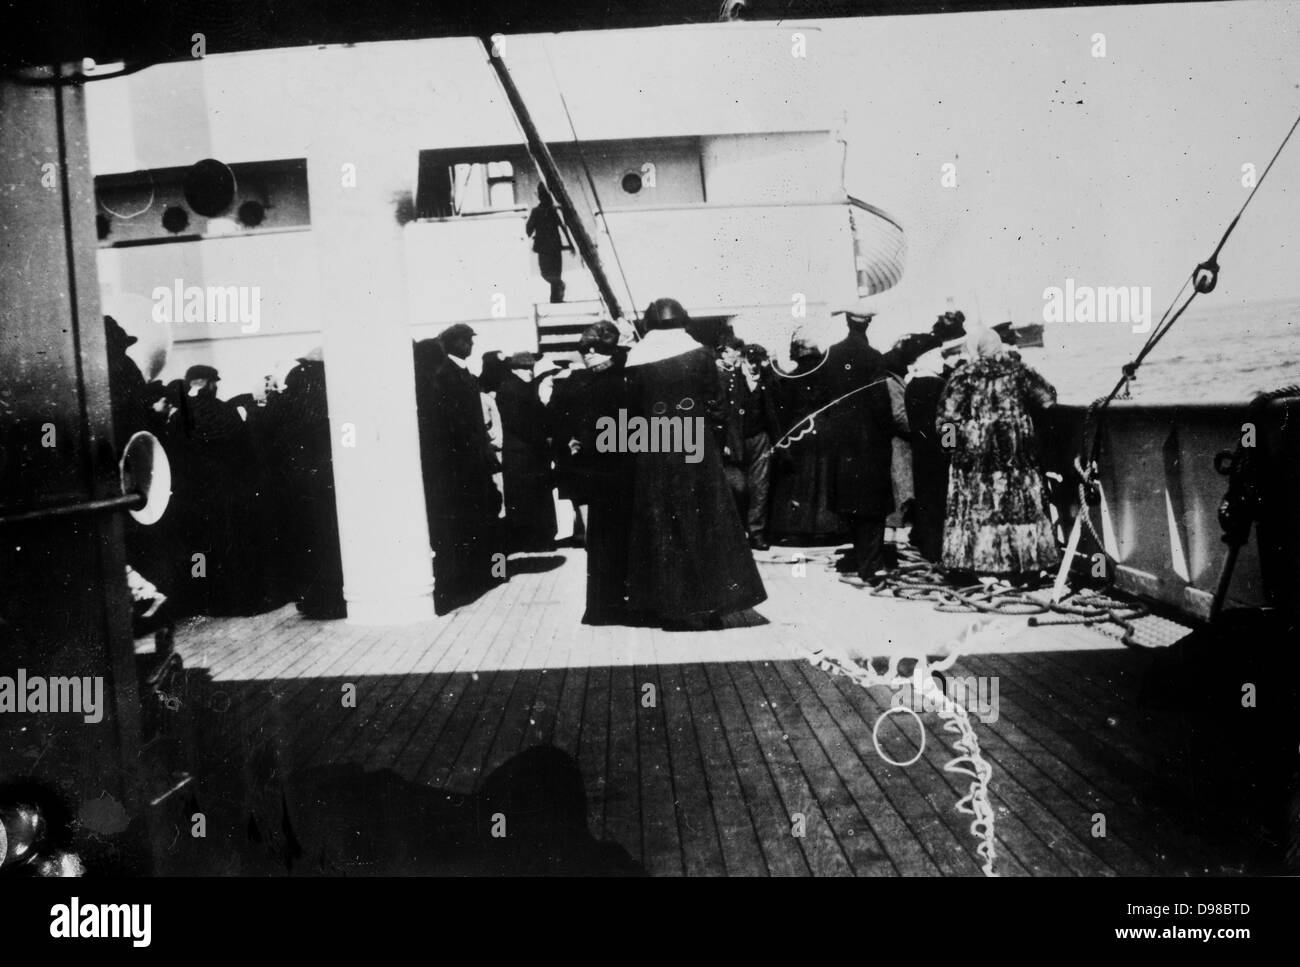 Superstiti del Titanic in carpathia. Data di creazione/Pubblicato: [1912 aprile]. Sommario: foto relative al disastro del RMS Titanic, che ha colpito un iceberg in aprile 1912 e affondò, uccidendo più di 1.500 persone. Foto Stock